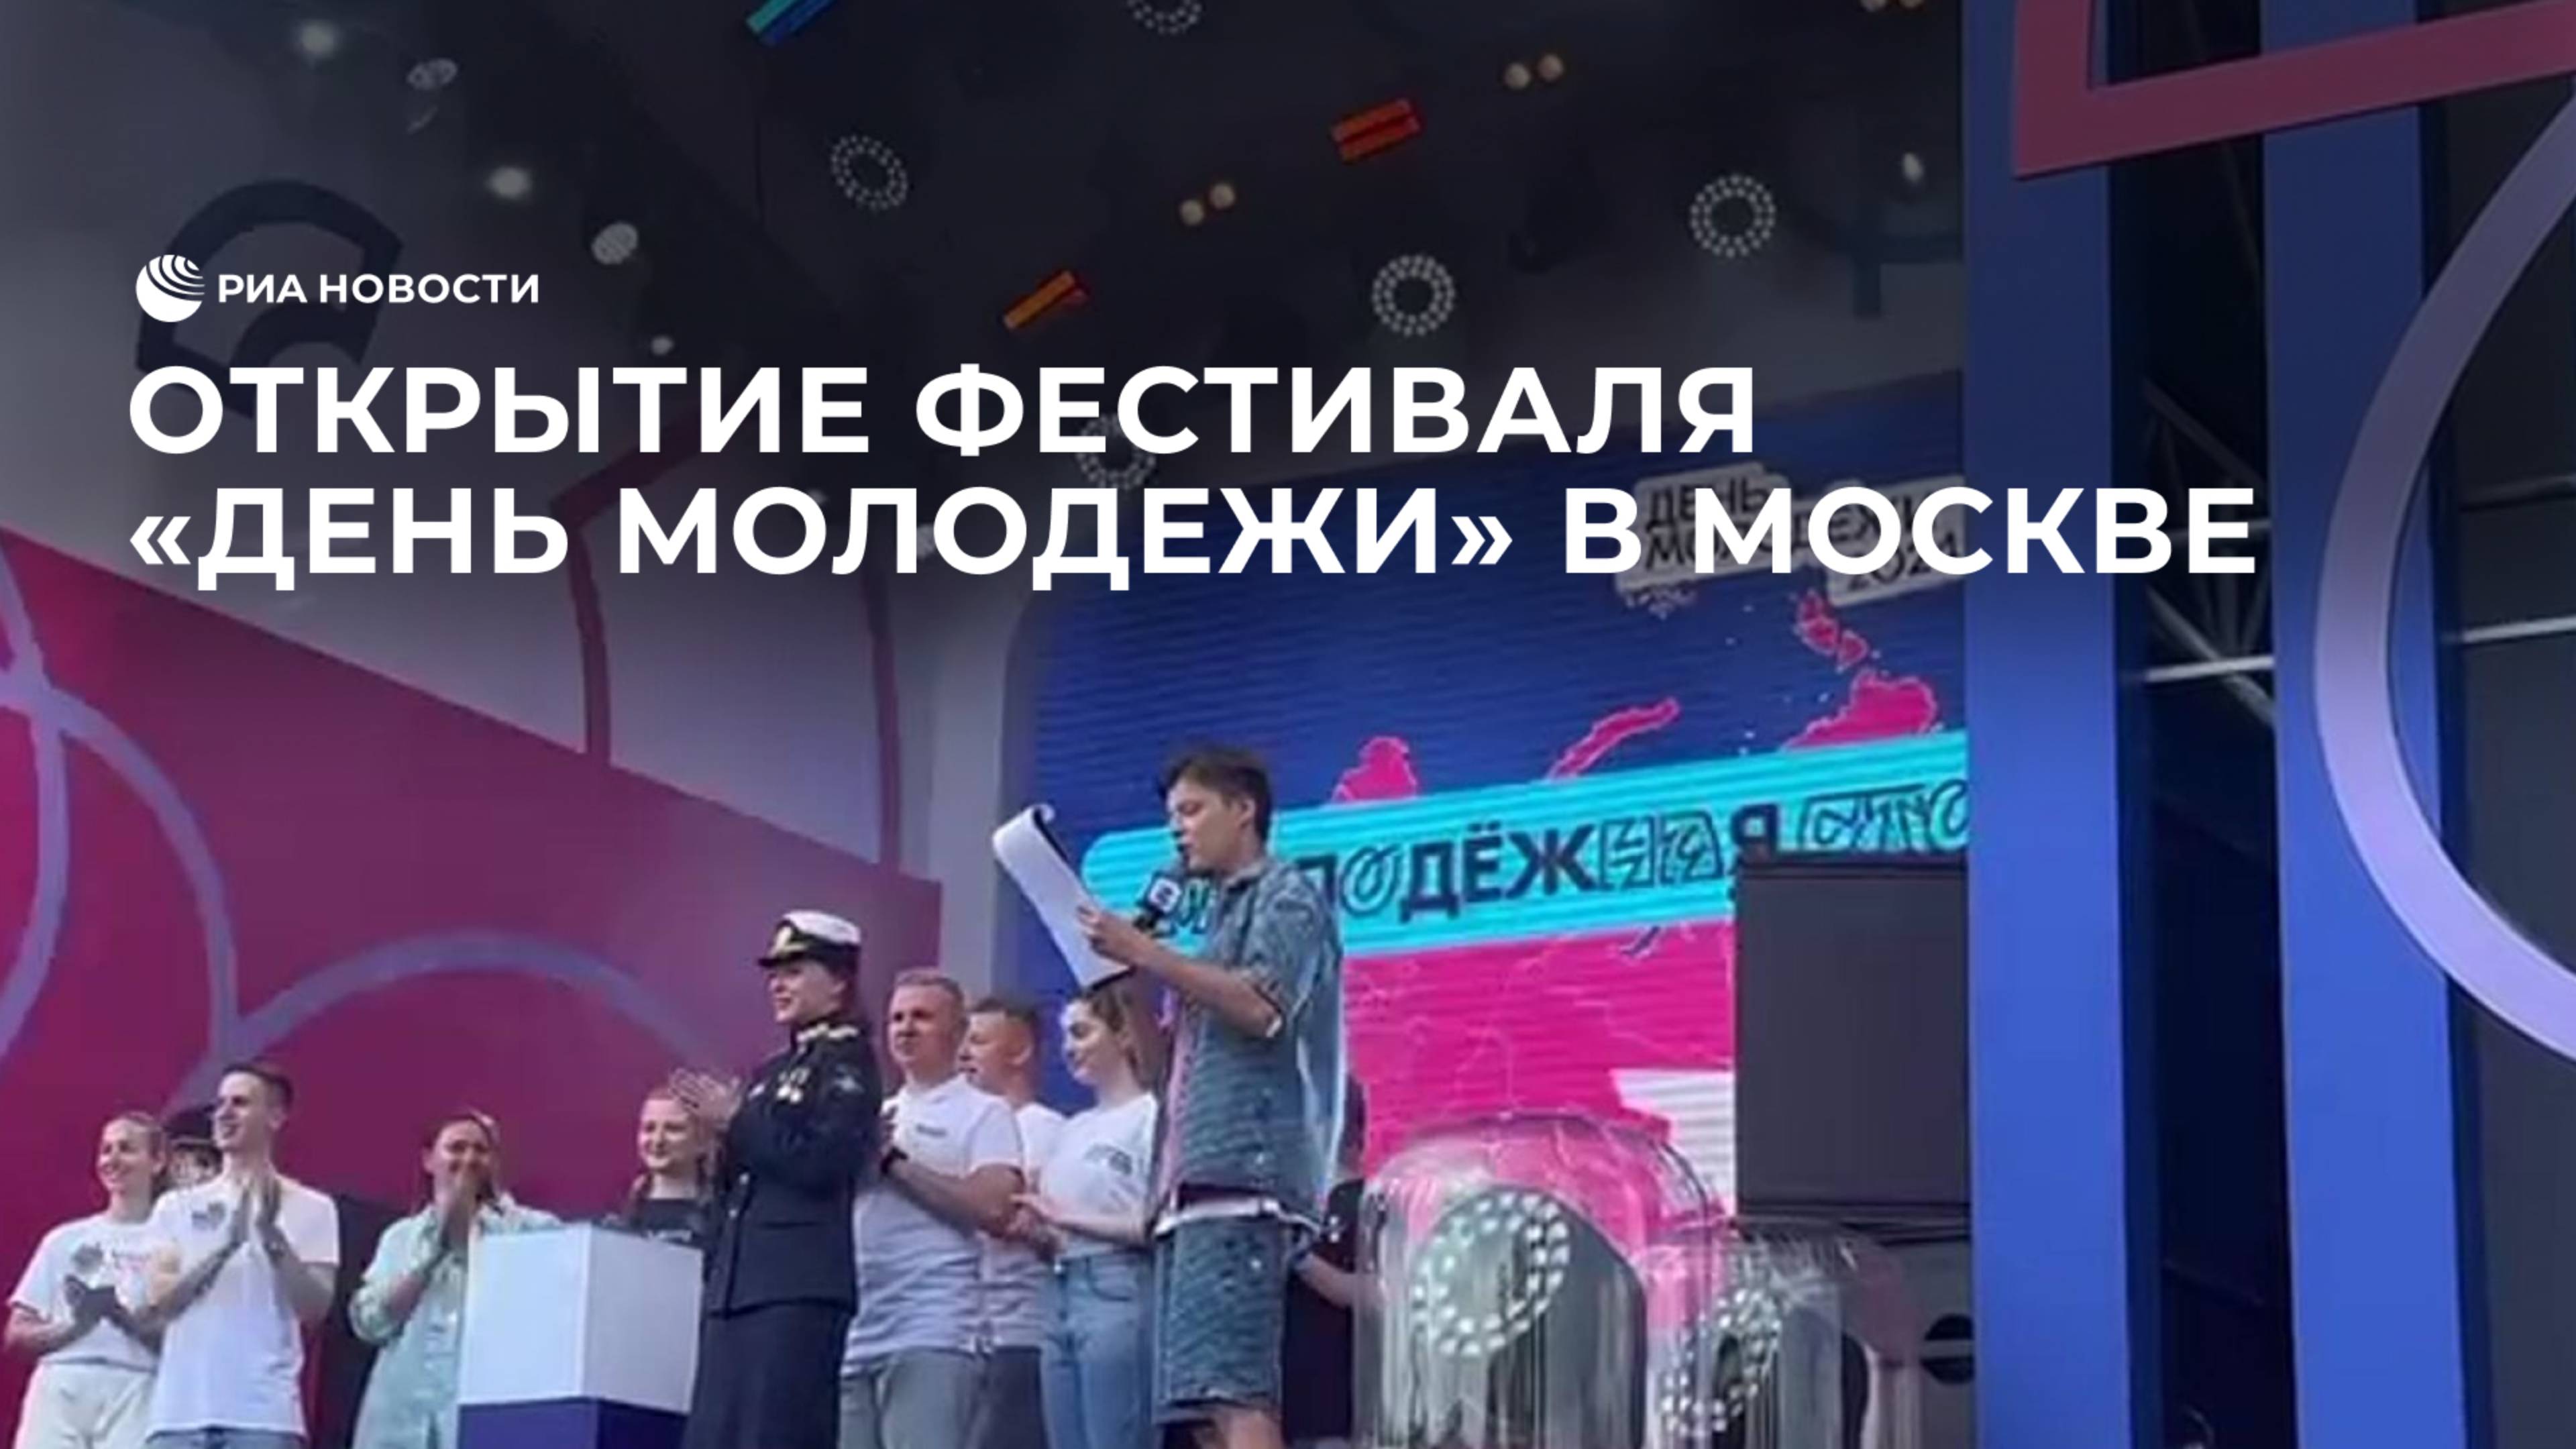 Открытие фестиваля "День молодежи" в Москве